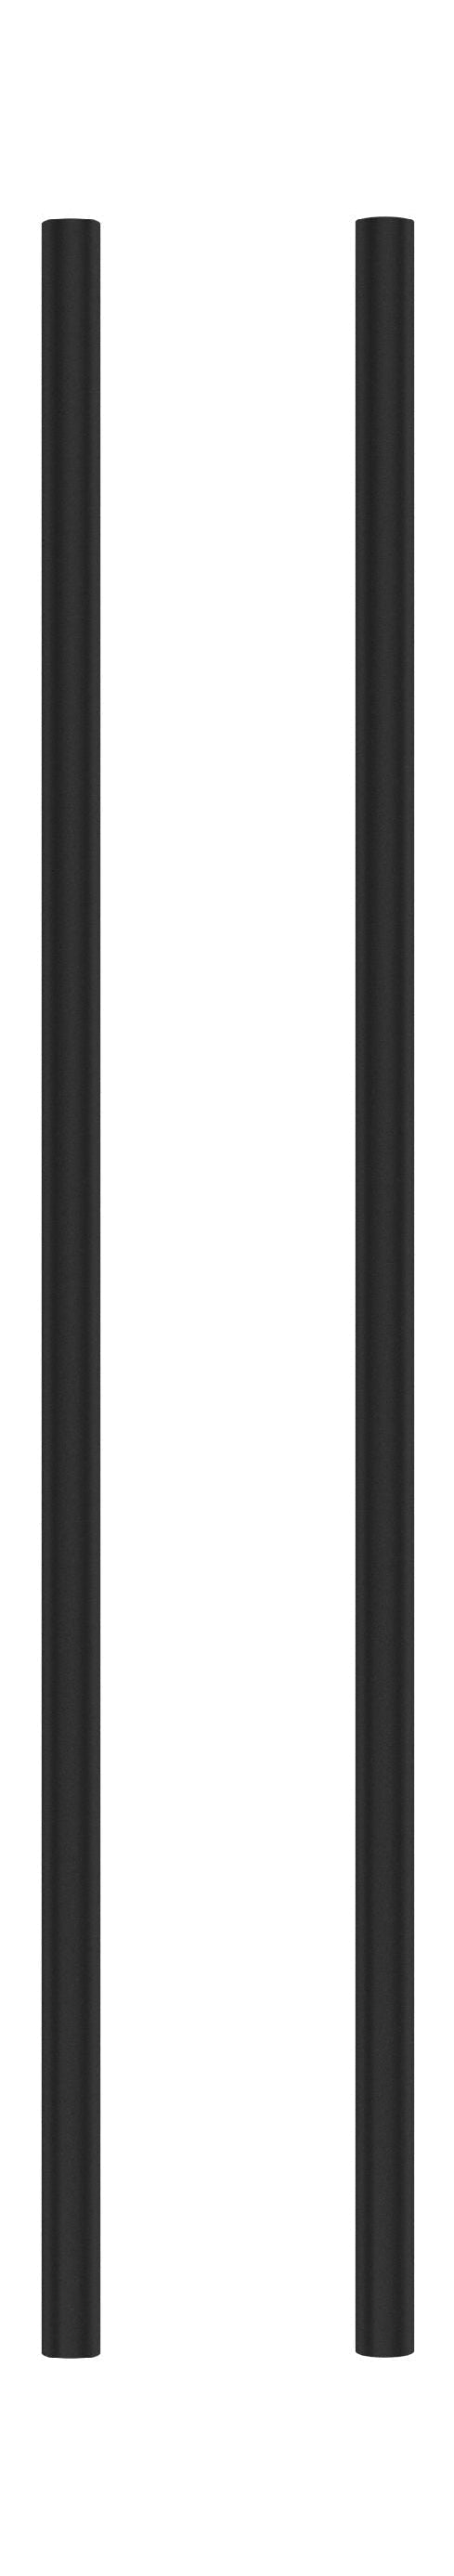 Sistema de estanterías Moebe/estantería de pared 65 cm, negro